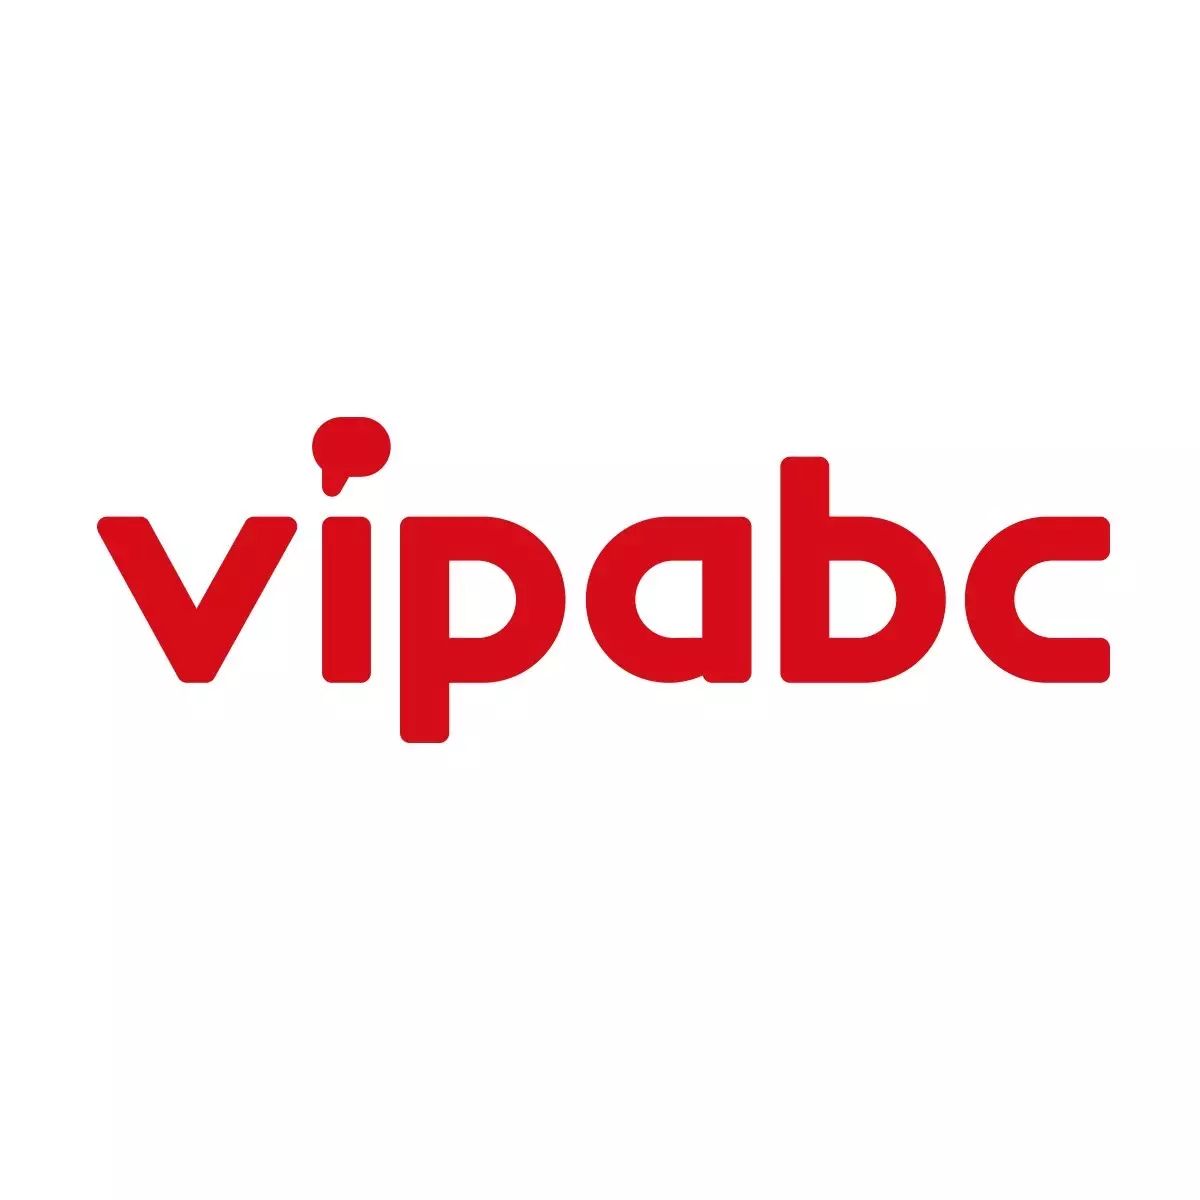 vipabc启用新logo重新诠释品牌文化